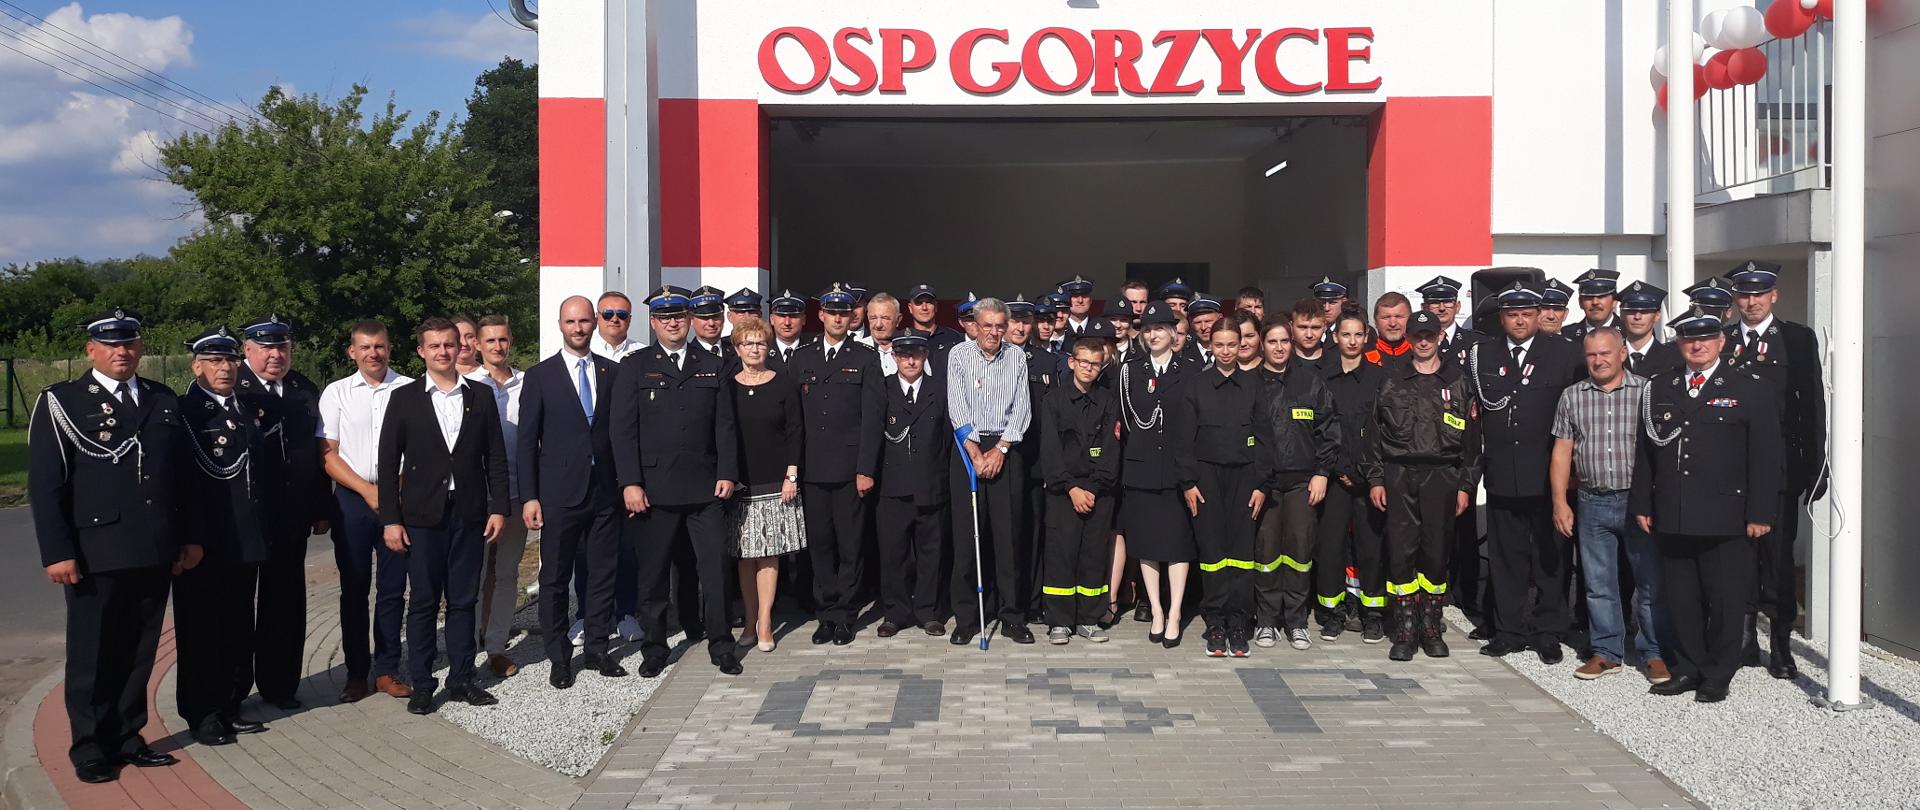 Otwarcie strażnicy OSP Gorzyce. Na zdjęciu widać osoby zebrane przed budynkiem strażnicy OSP Gorzyce do pamiątkowego zdjęcia.